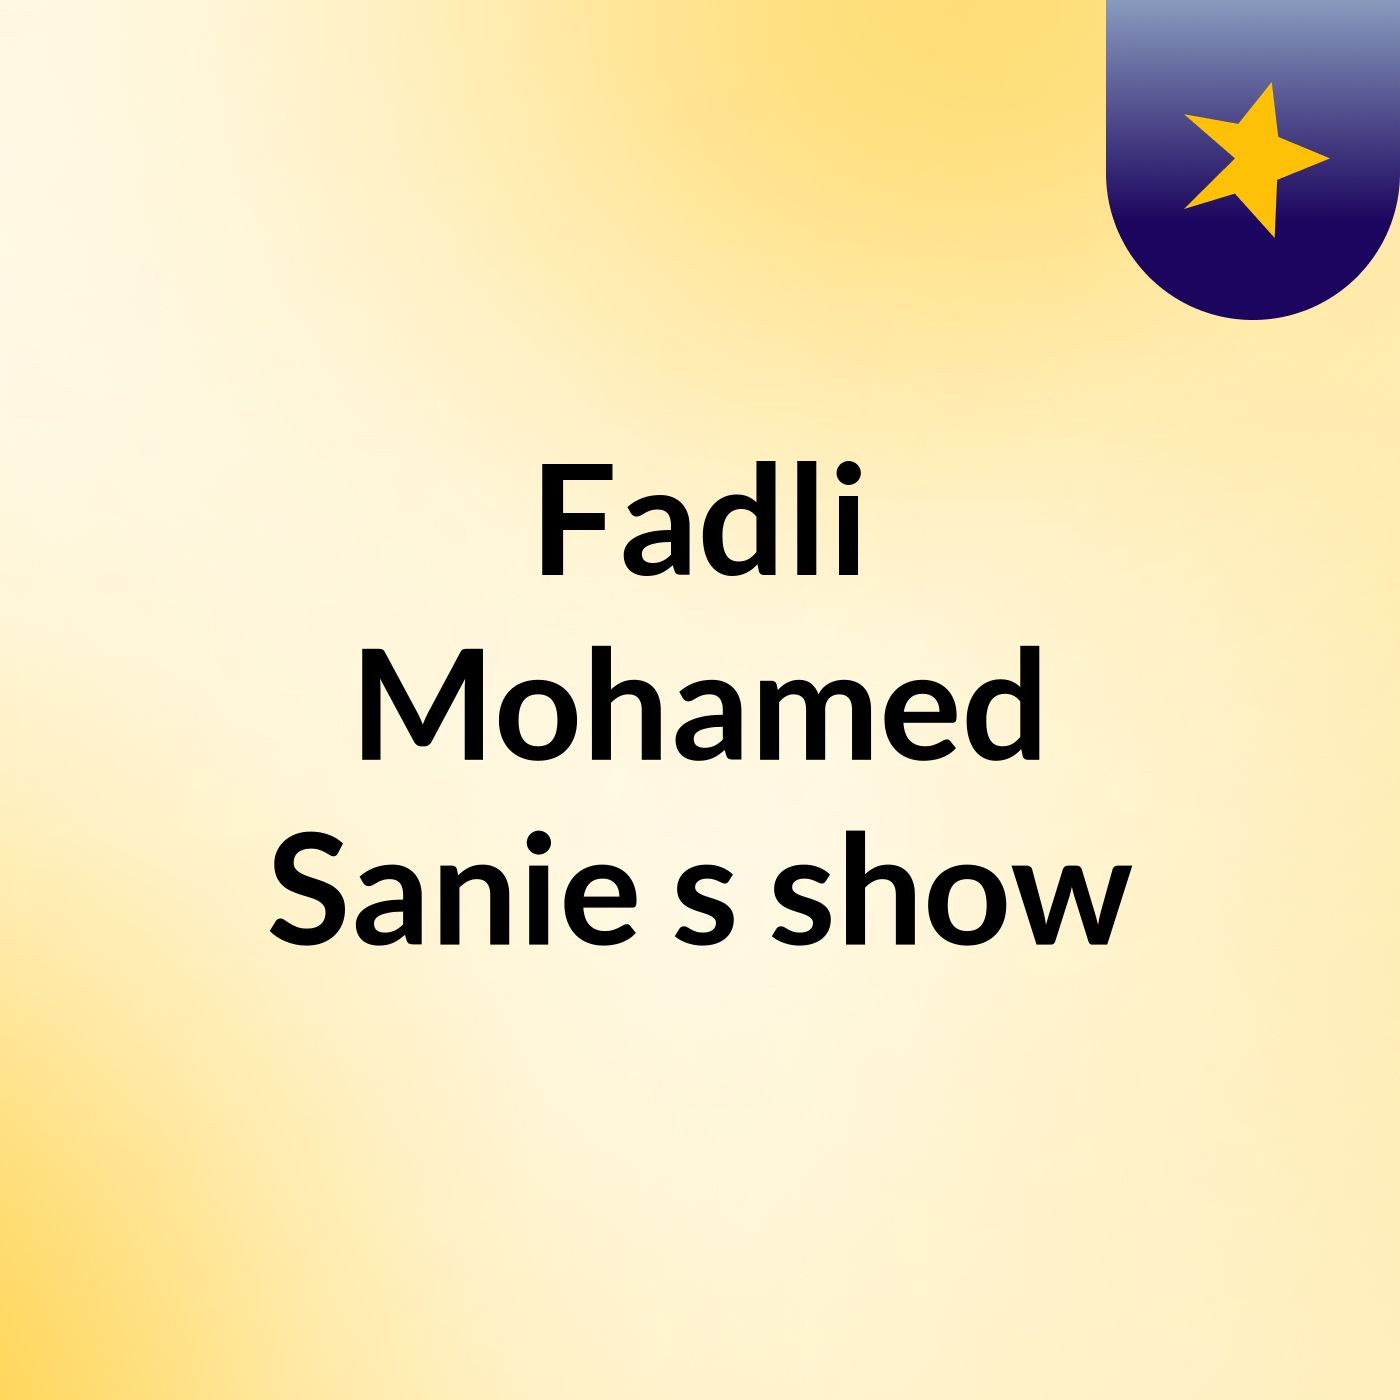 Episode 15 - Fadli Mohamed Sanie's show